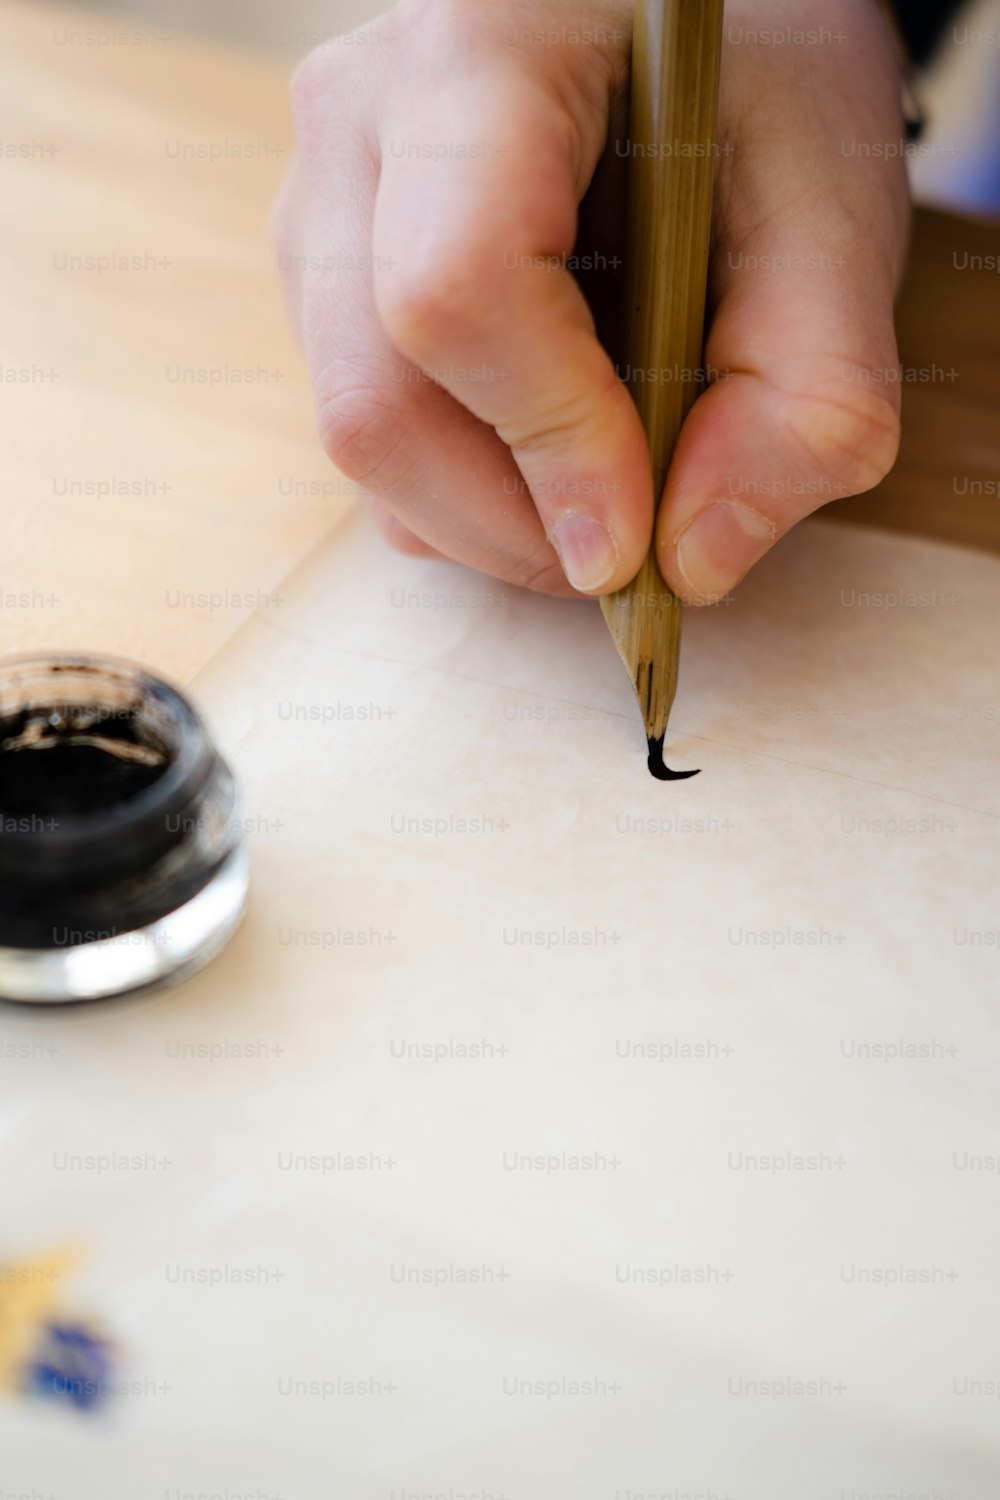 una persona escribiendo en un pedazo de papel con un bolígrafo